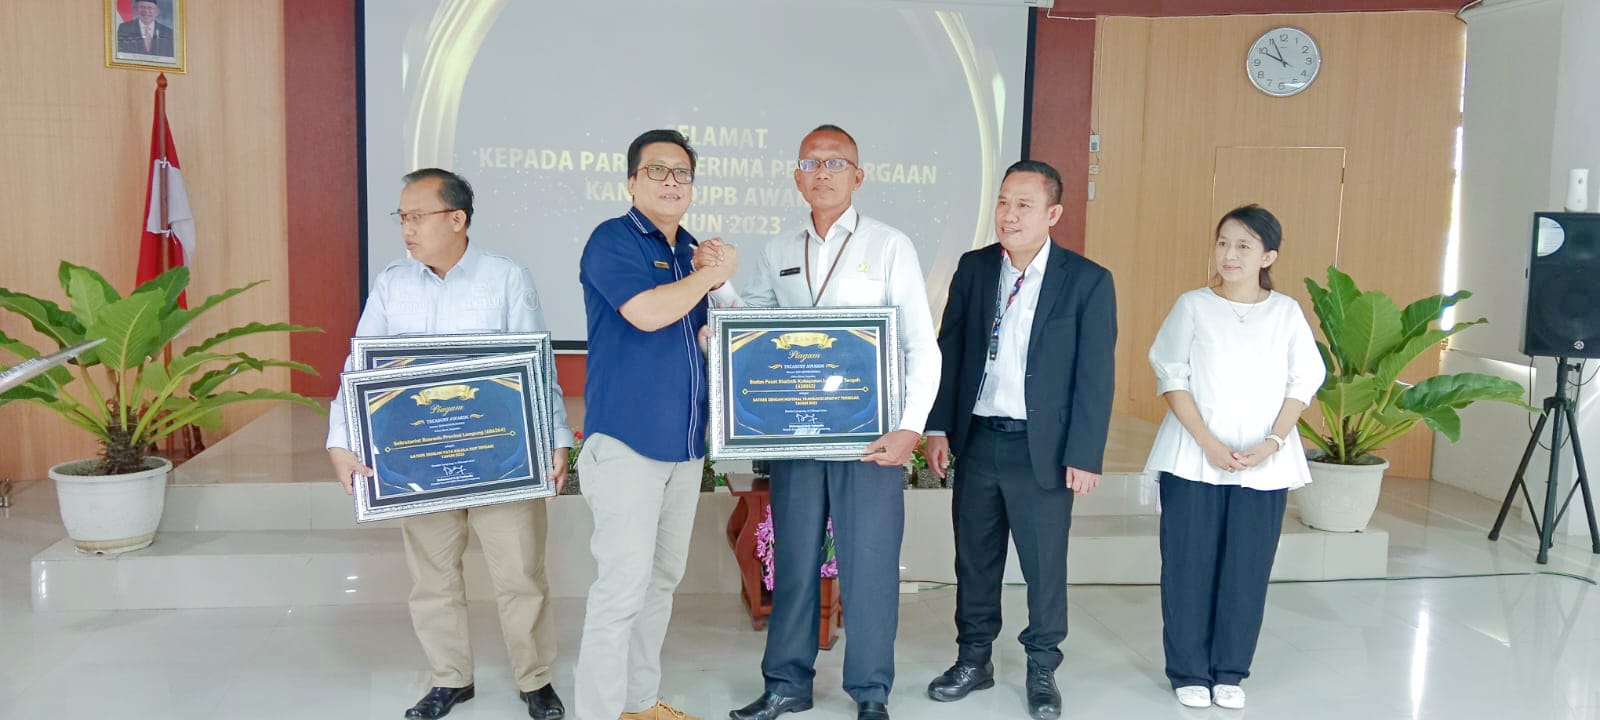 Satu-Satunya di Lampung, BPS Lamteng Sukses Raih Penghargaan dari Kanwil DJPb Provinsi Lampung